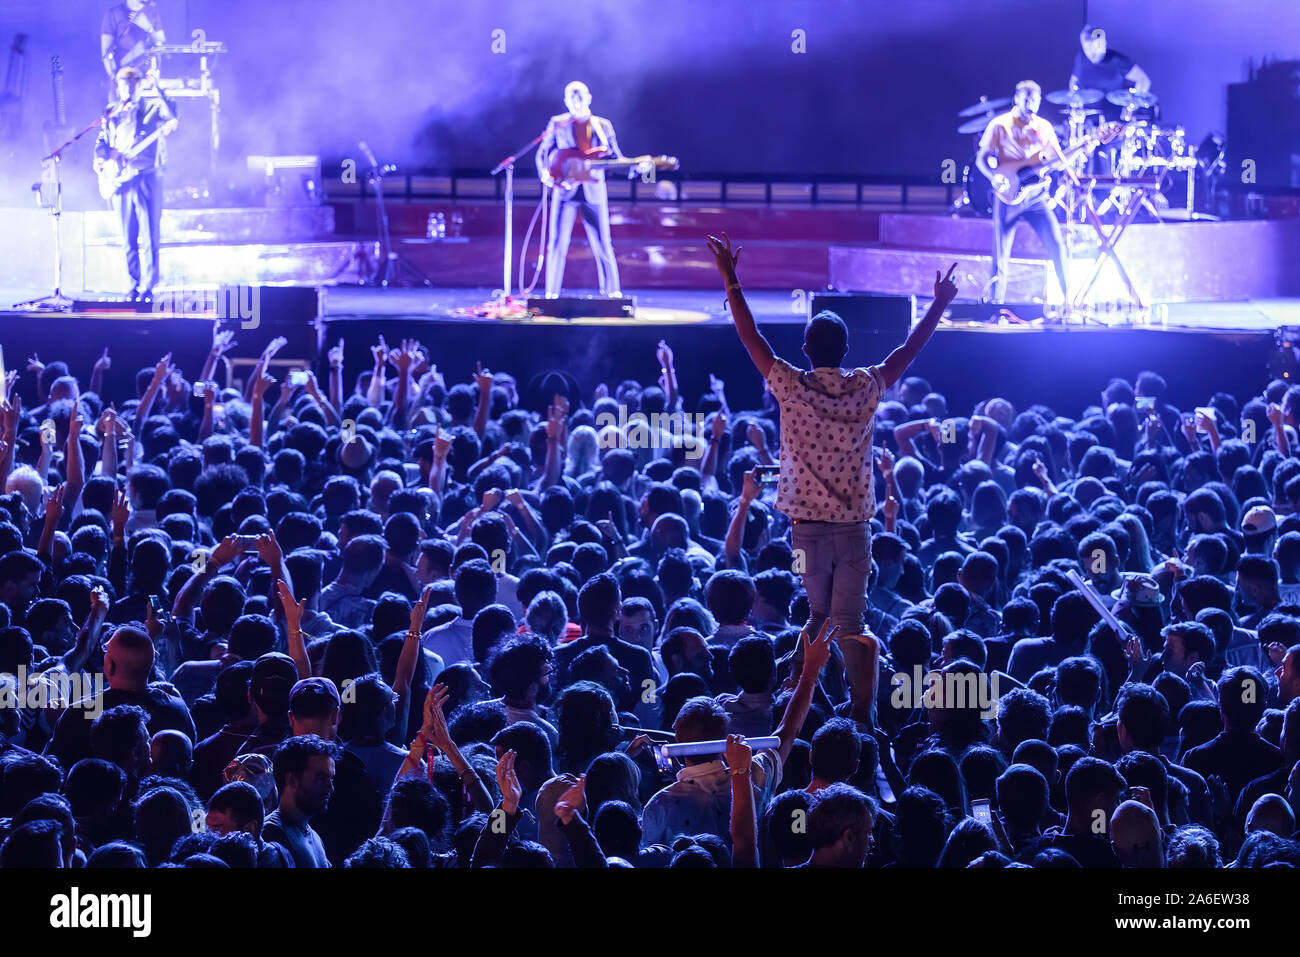 MADRID - SEP 7 : les fans de musique dans un concert à Dcode Music Festival le 7 septembre 2019 à Madrid, Espagne. Banque D'Images